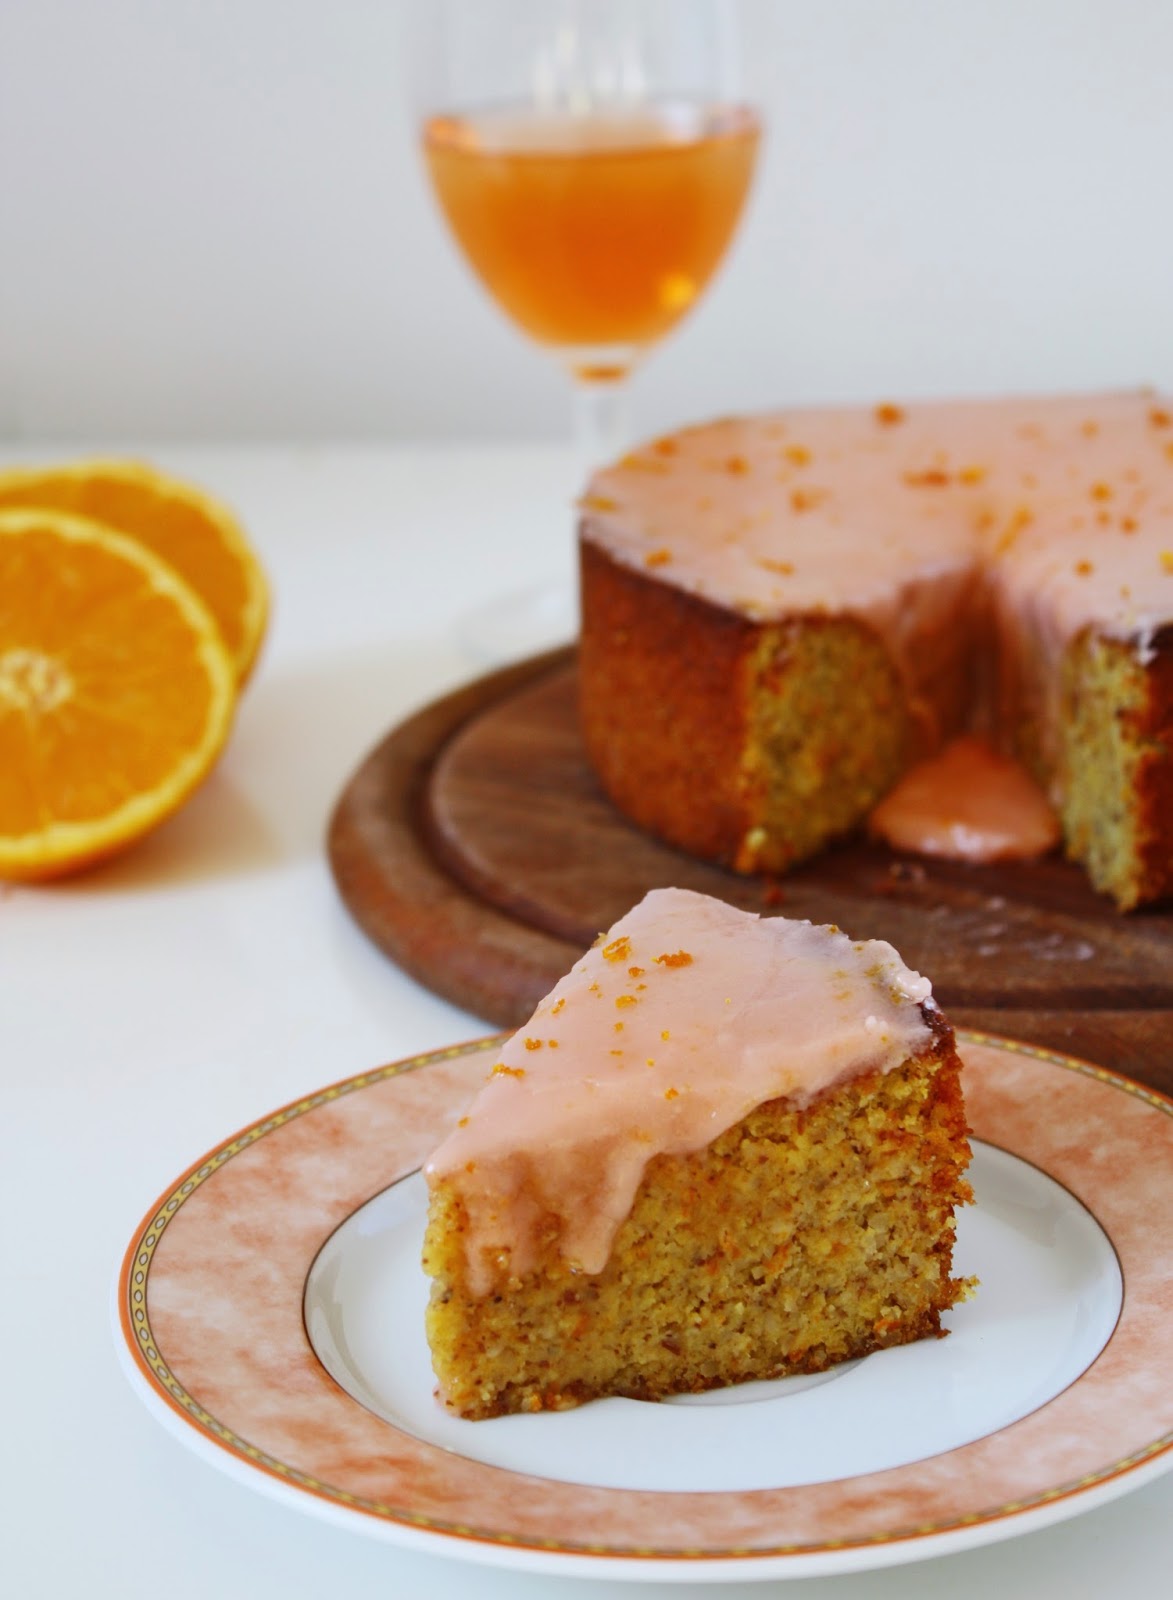 Spanischer Orangen Mandel Kuchen — Rezepte Suchen